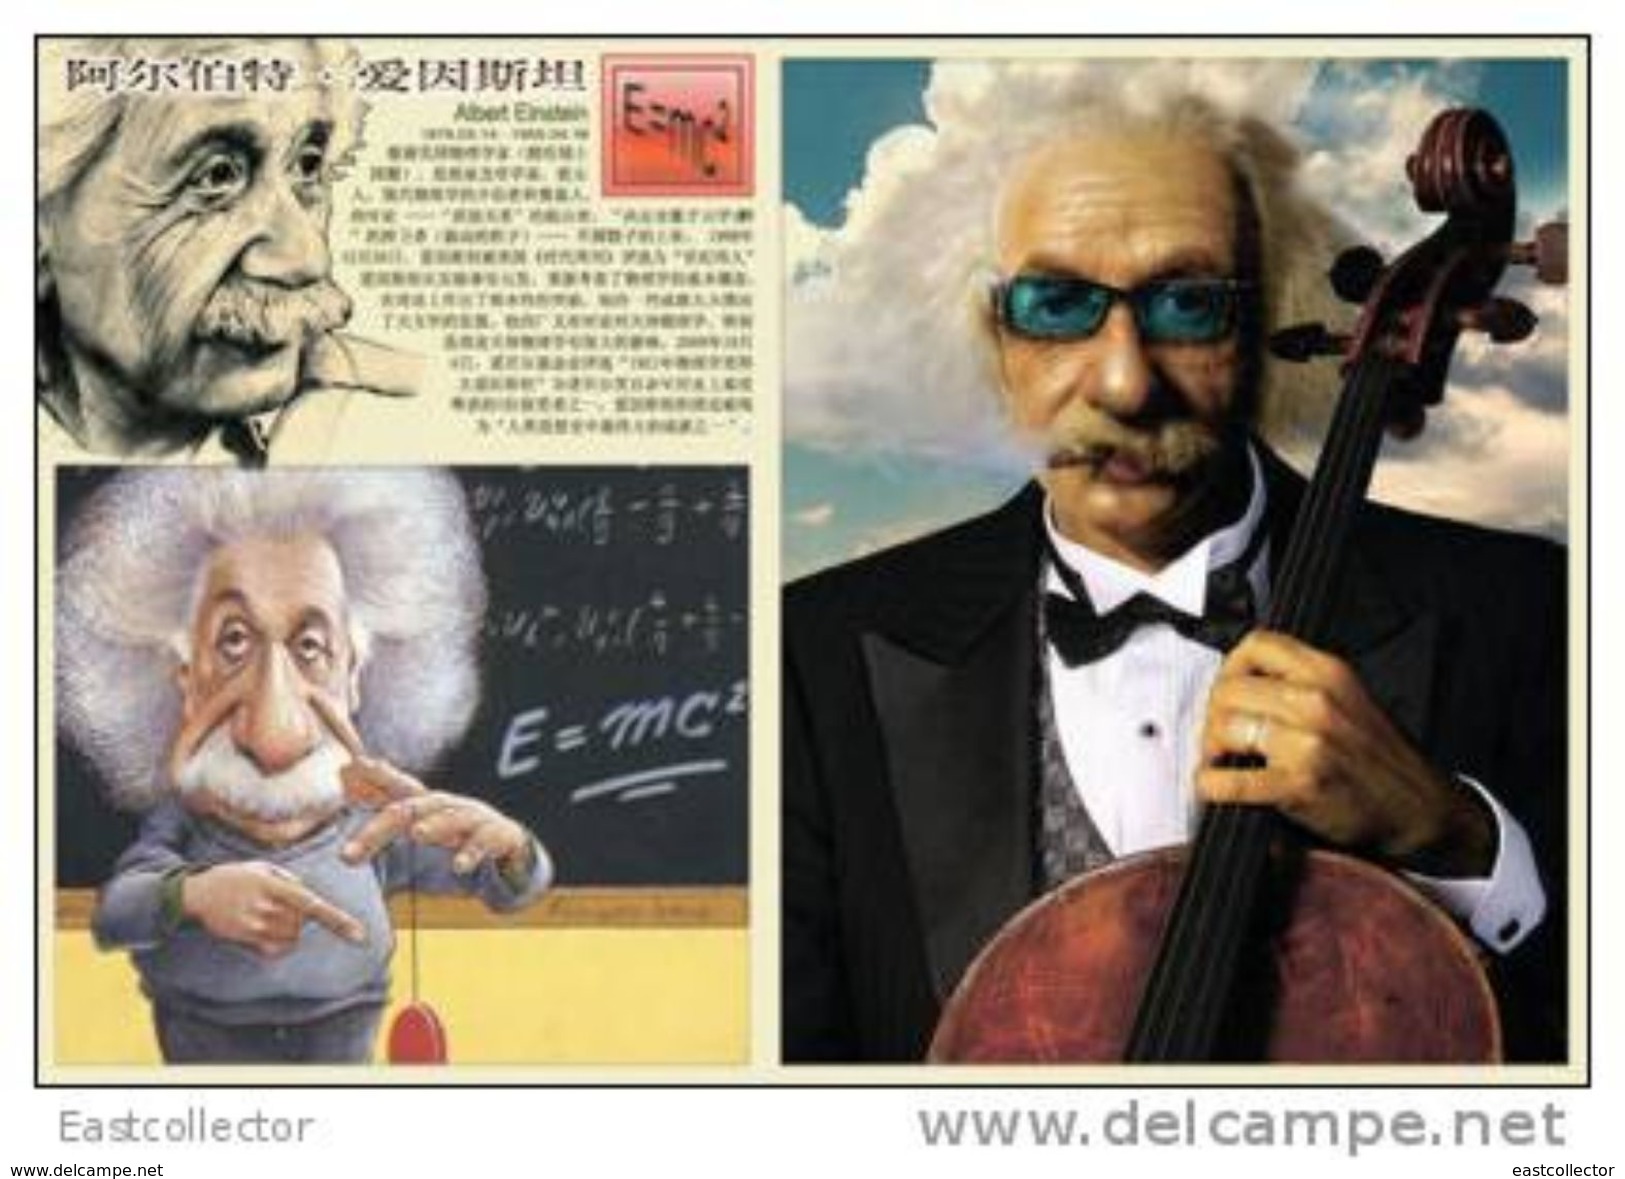 Postal Stationery Card Albert Einstein Pre-stamped Card 0322 - Nobelpreisträger